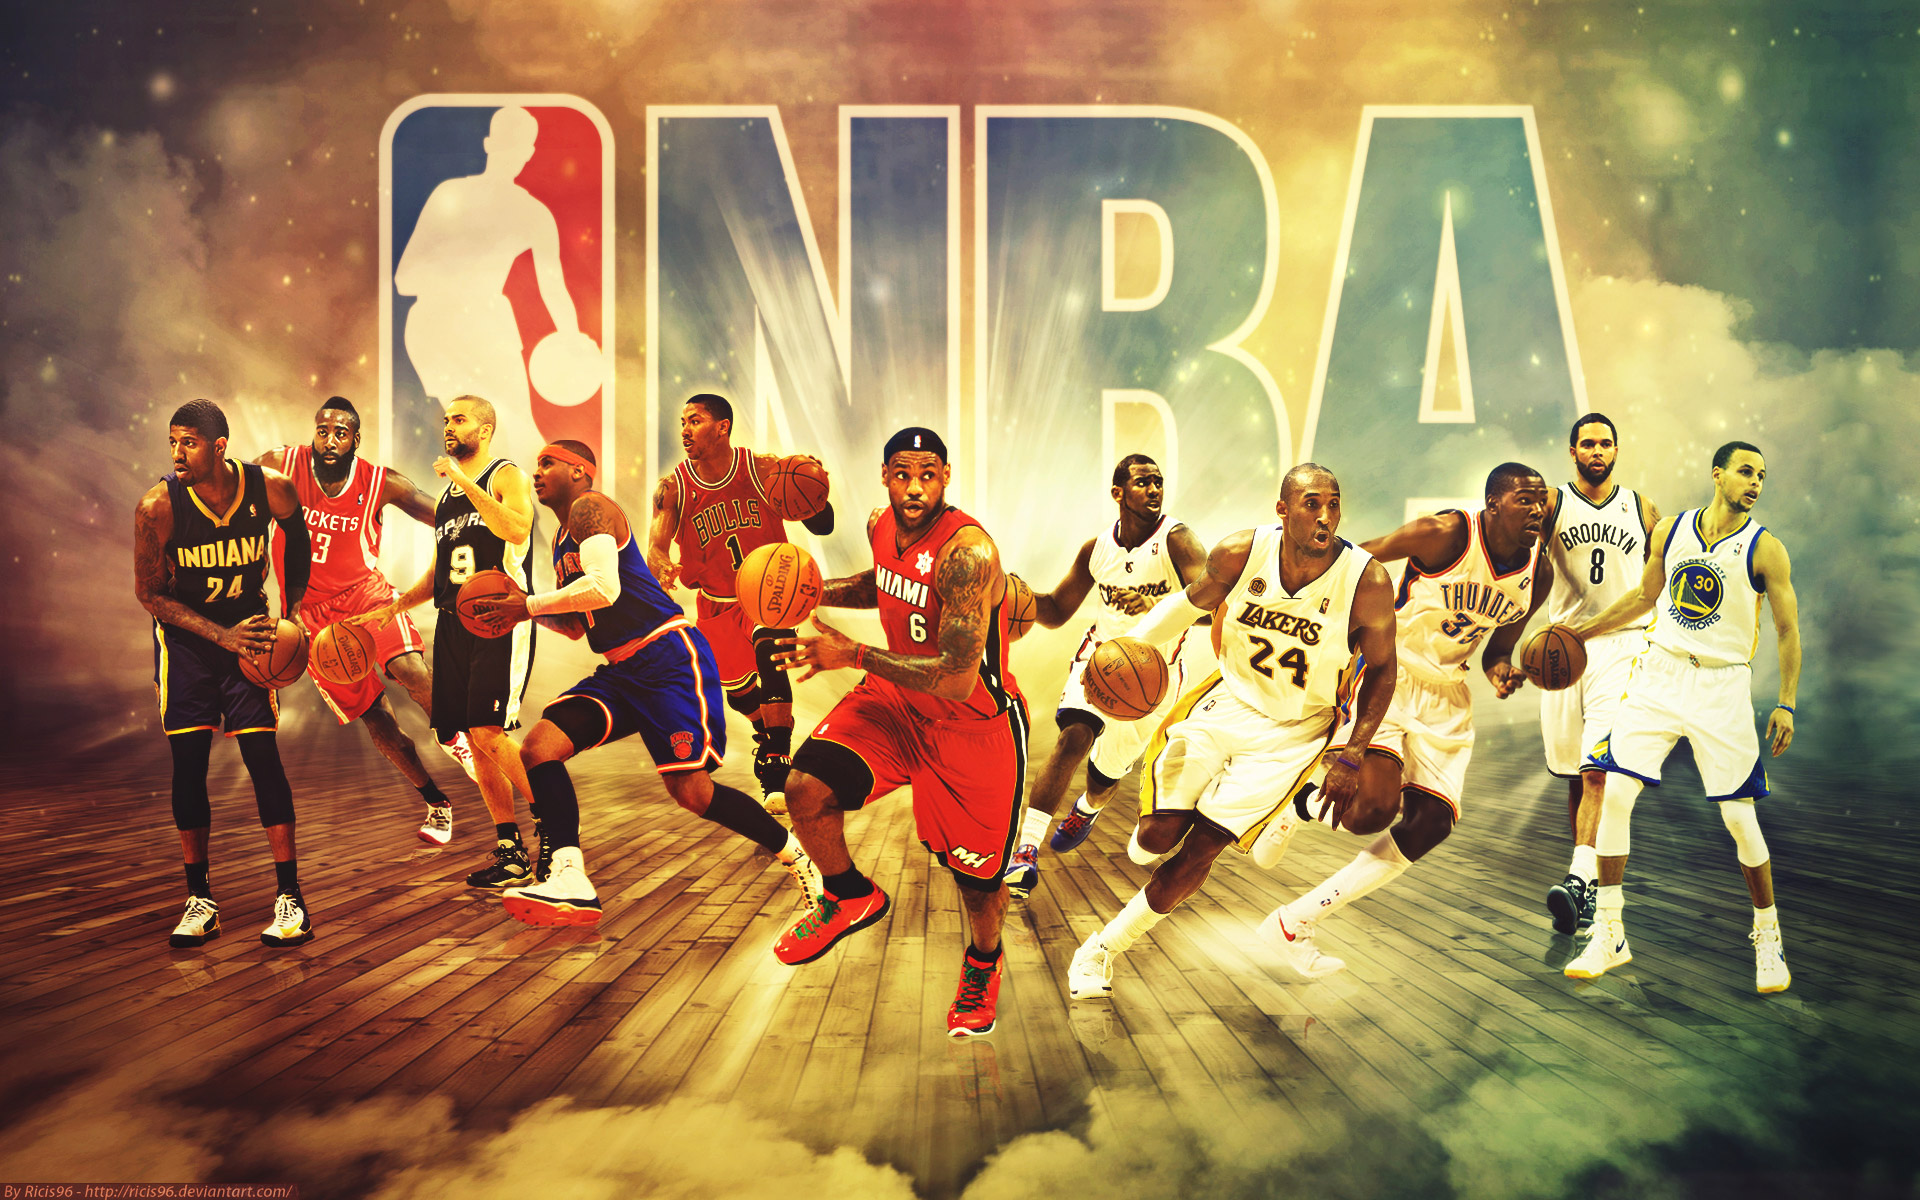 Wallpaper Share This Cool Nba Basketball Team On